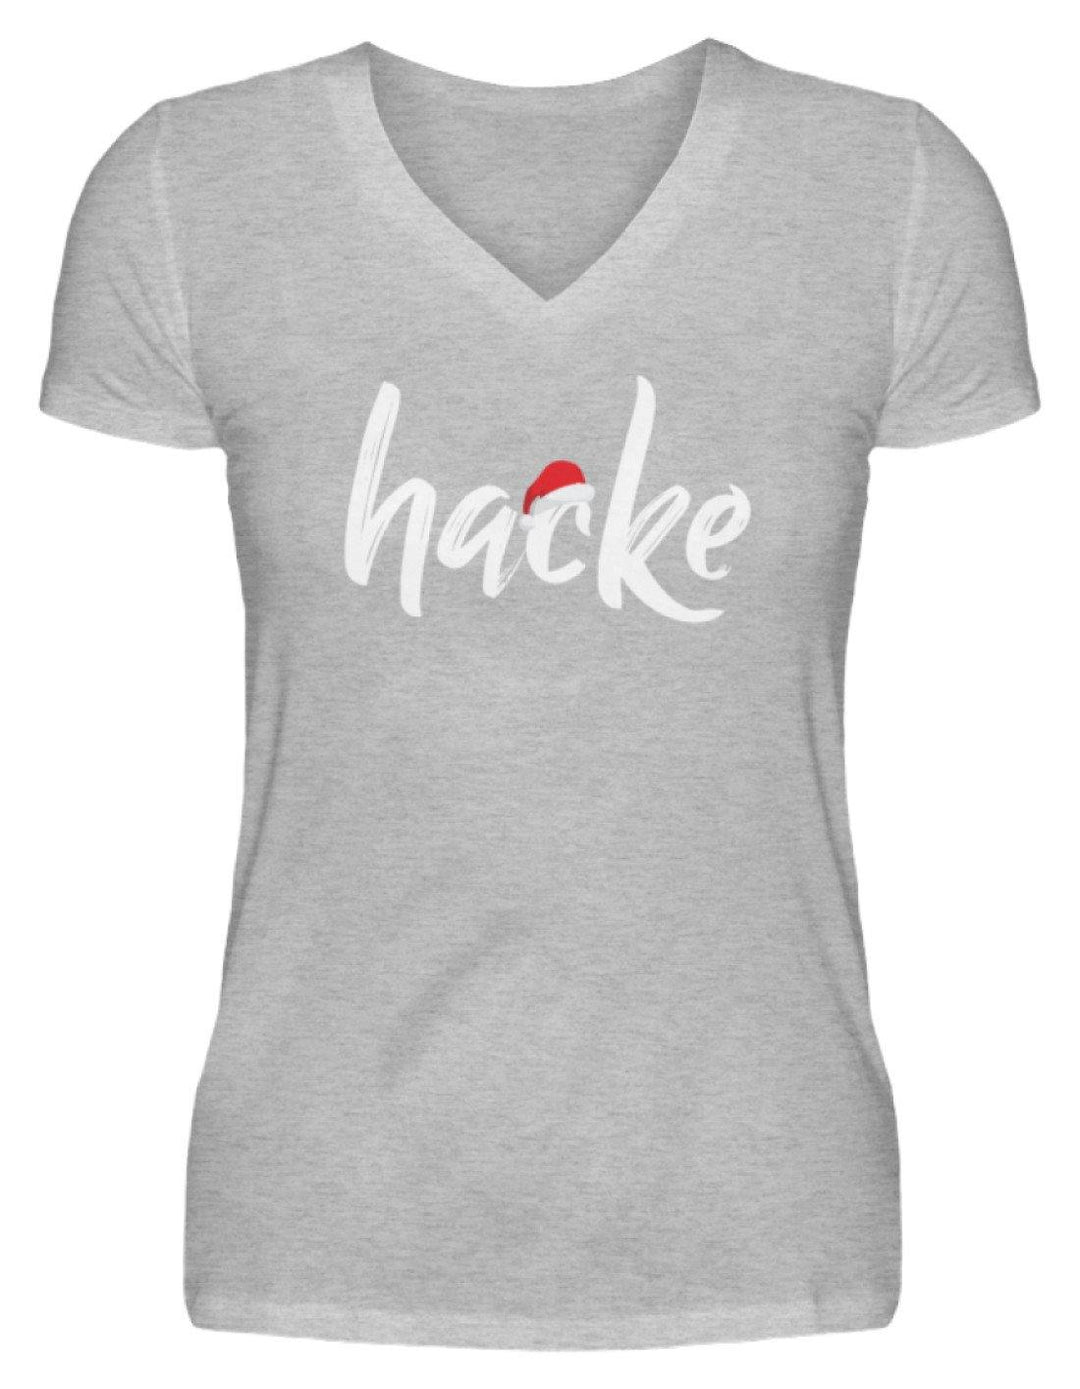 Hacke - Hacke Dicht - Words on Shirts  - V-Neck Damenshirt - Words on Shirts Sag es mit dem Mittelfinger Shirts Hoodies Sweatshirt Taschen Gymsack Spruch Sprüche Statement